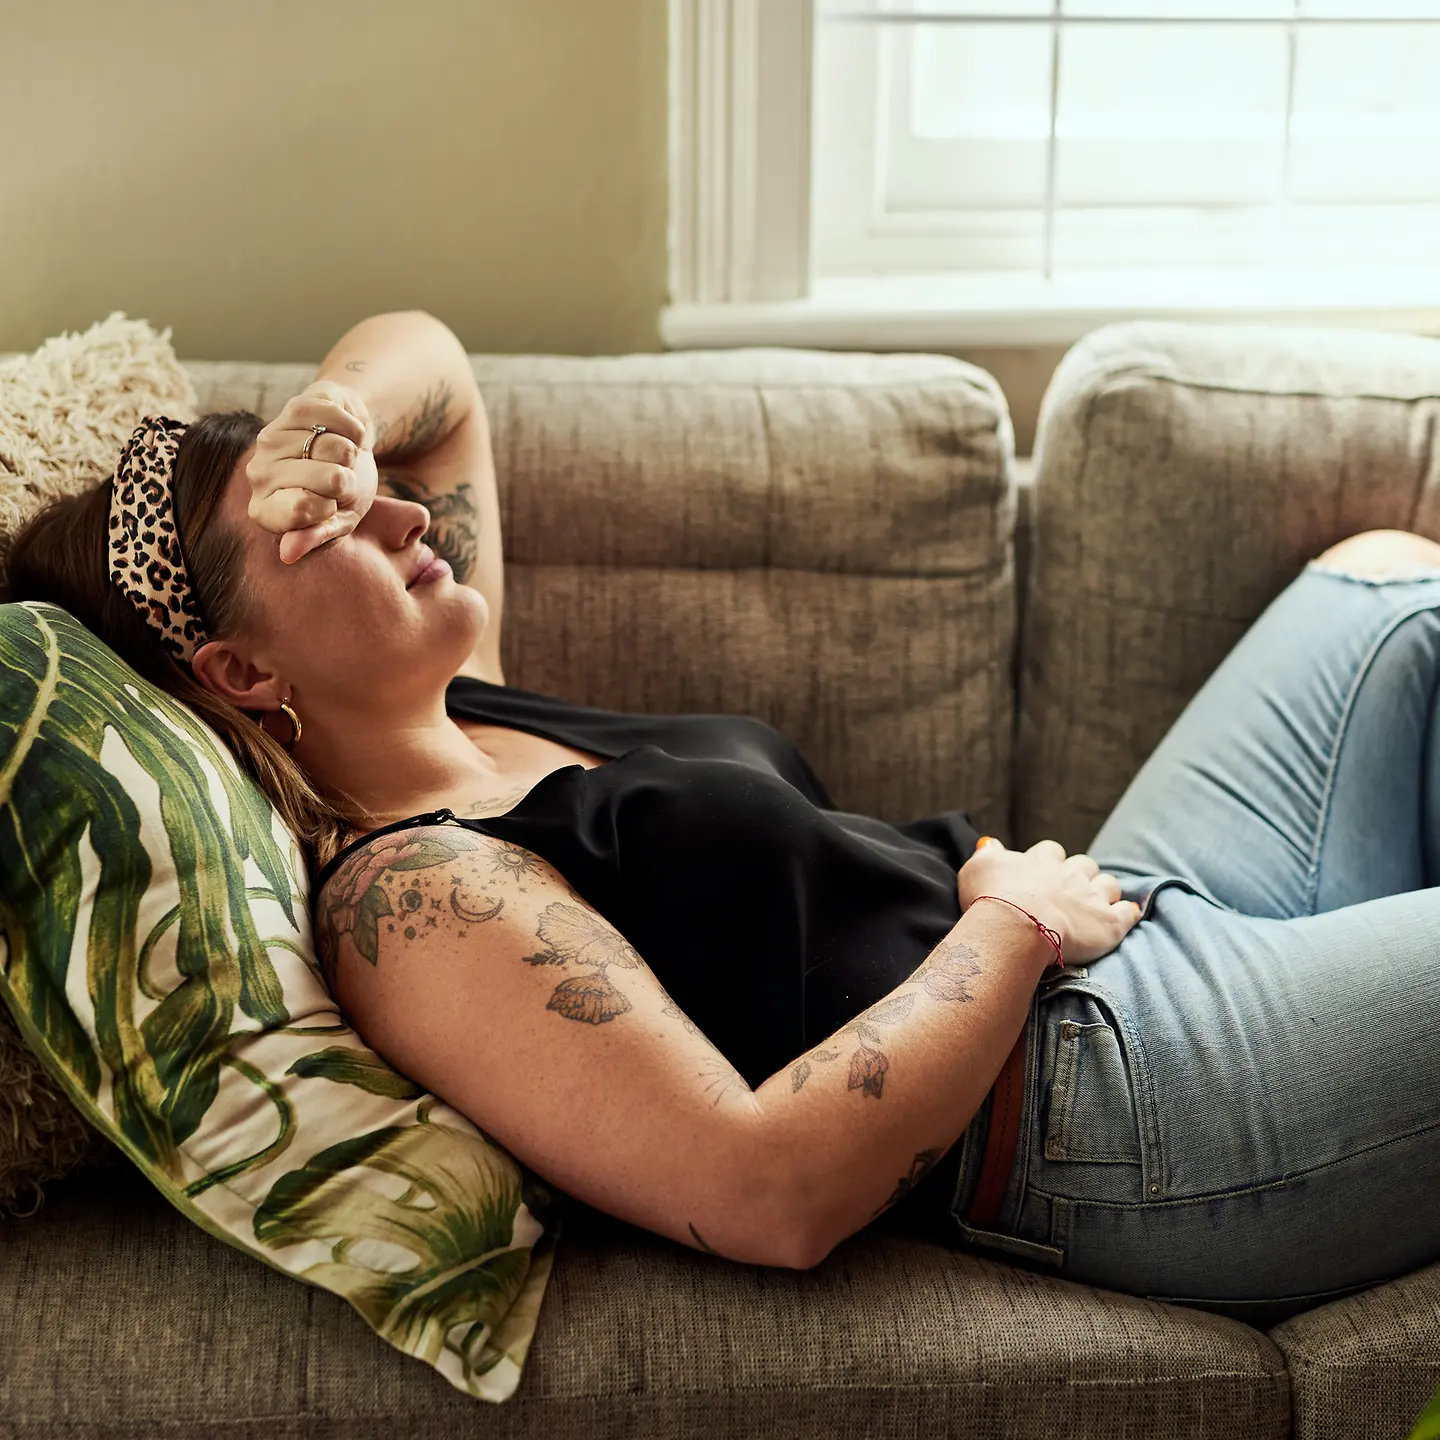 Eine junge Frau liegt mit Bauchschmerzen auf dem Sofa.